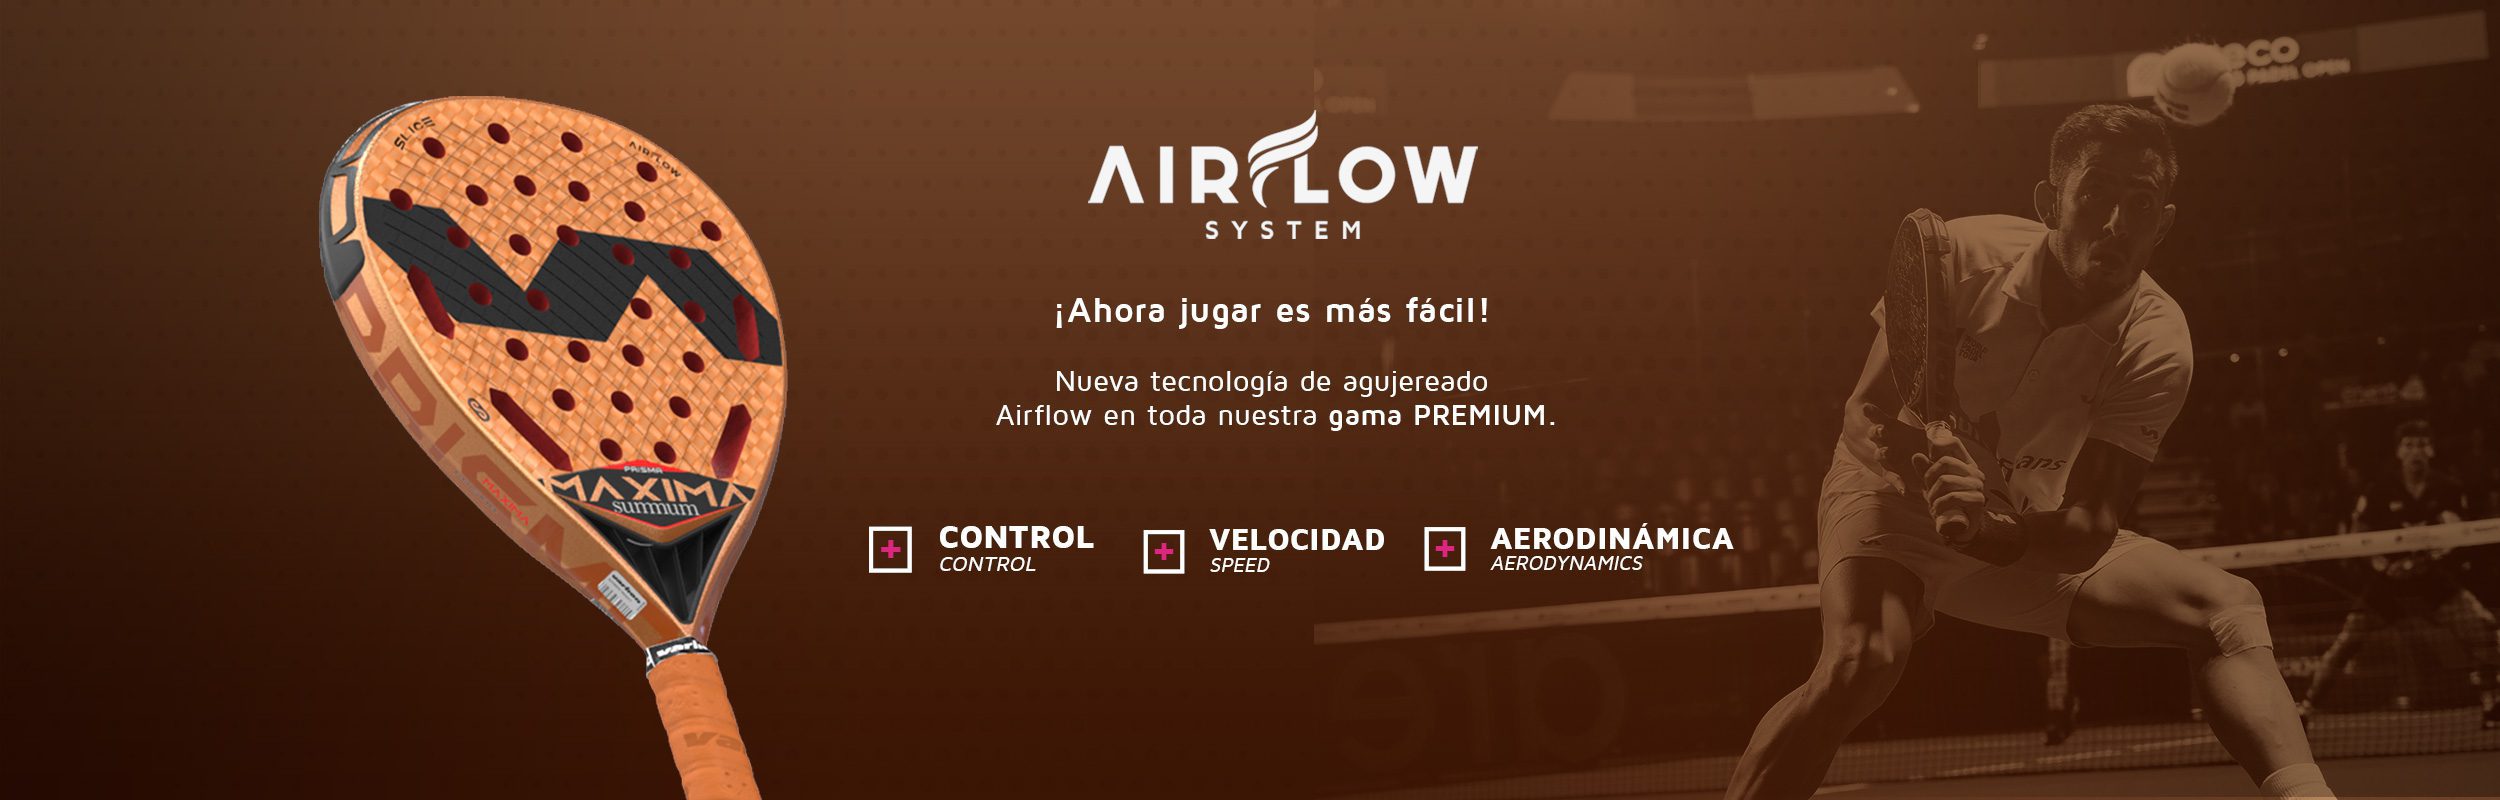 Airflow-tech-web-slide